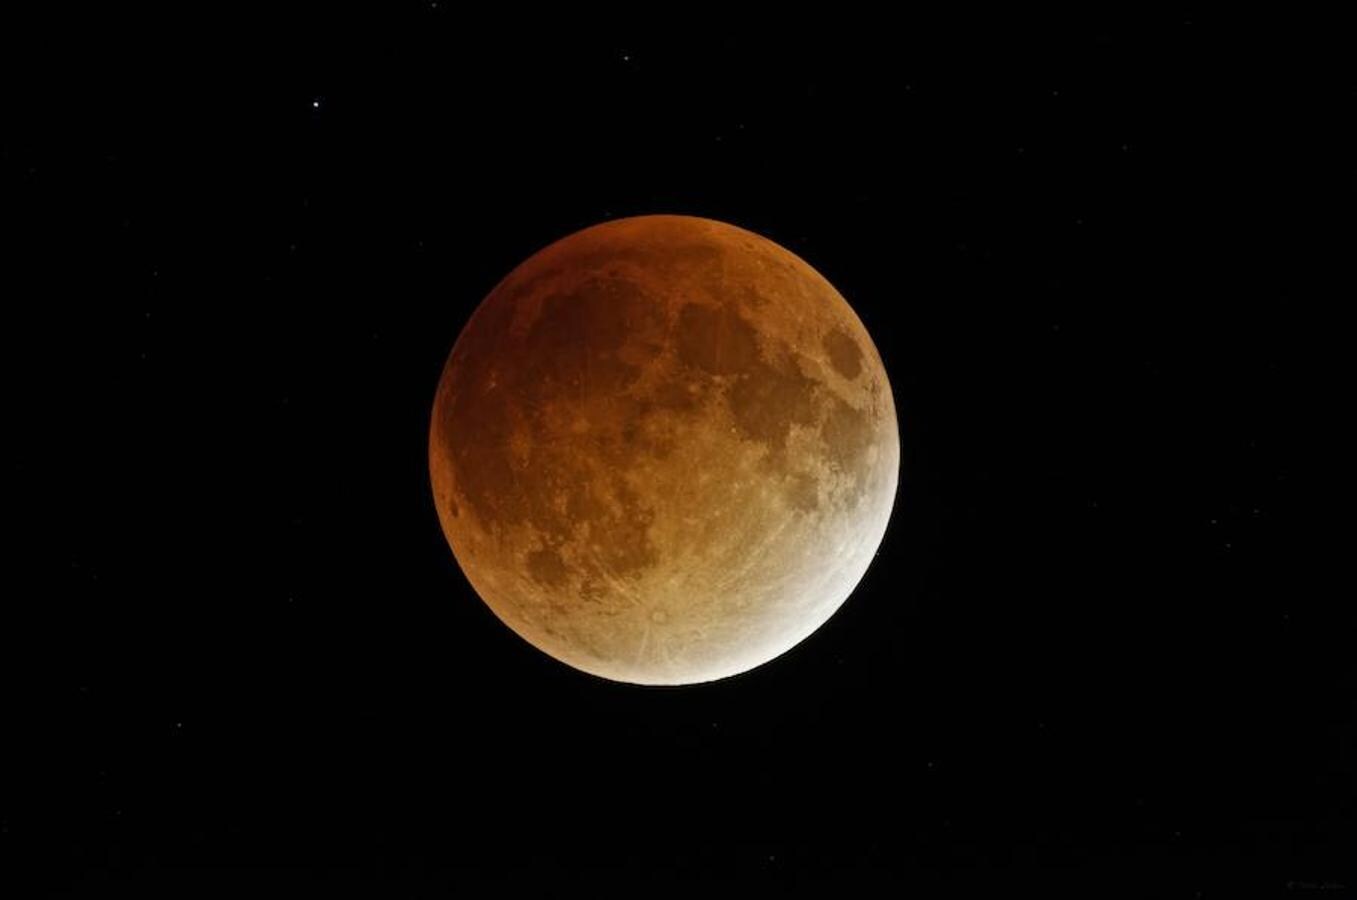 La luna atravesará la sombra que proyecta la Tierra y ya que la luz solar le llegará más débil y se refractará en la atmósfera, el satélite cogerá un tono rojo-anaranjado